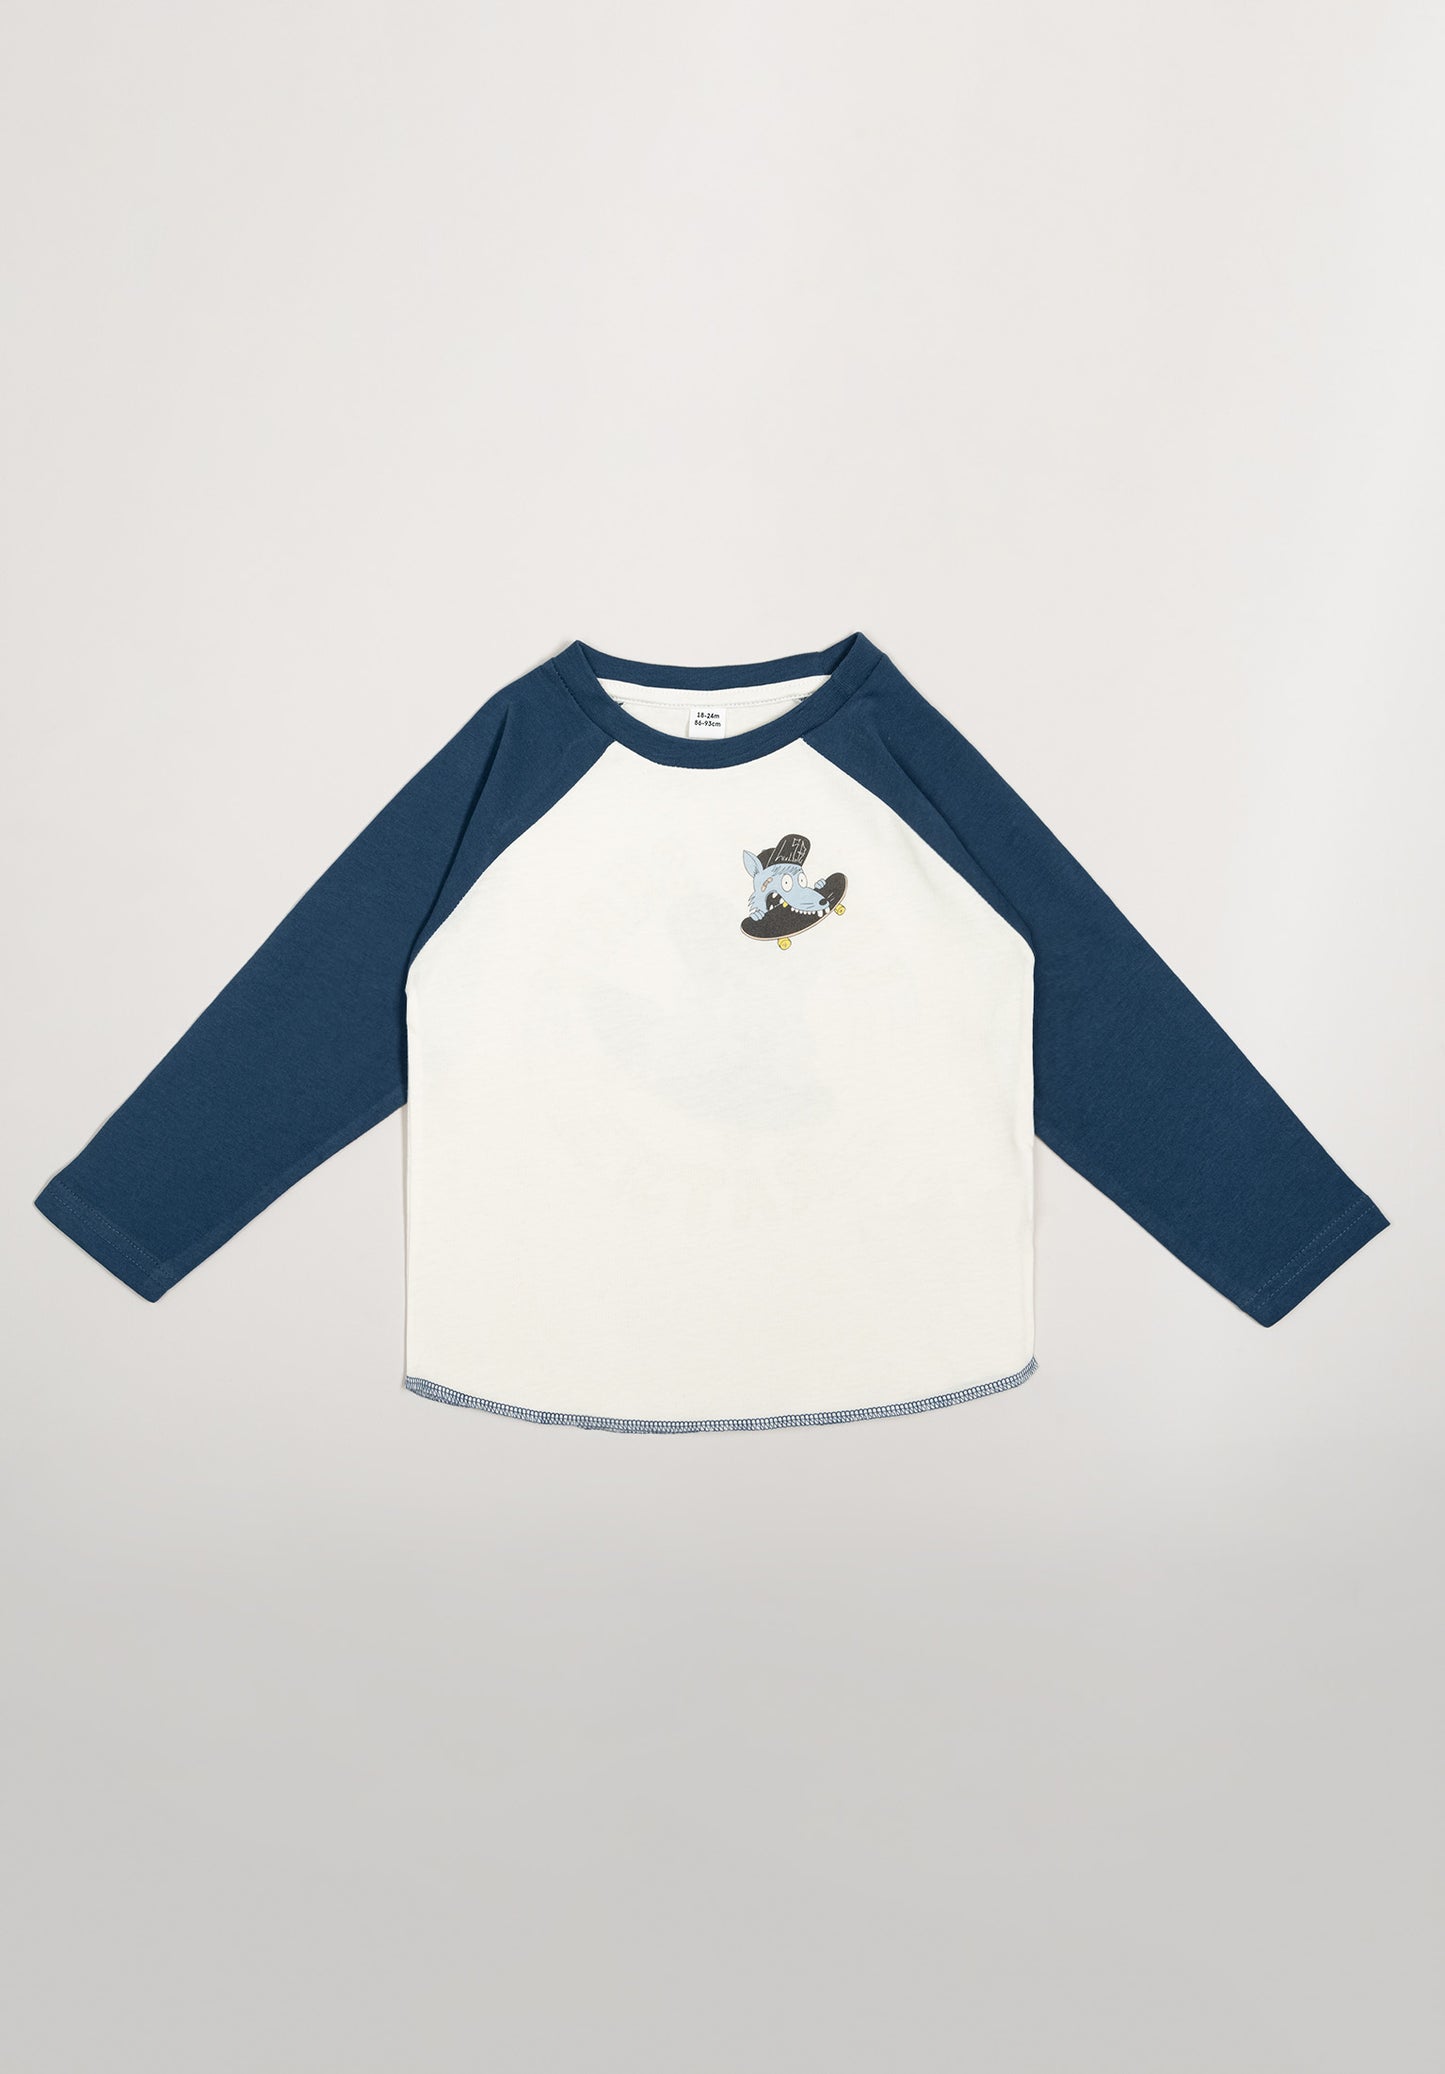 Little Skate Rats - Baseball T-Shirt - Logo - white/navy